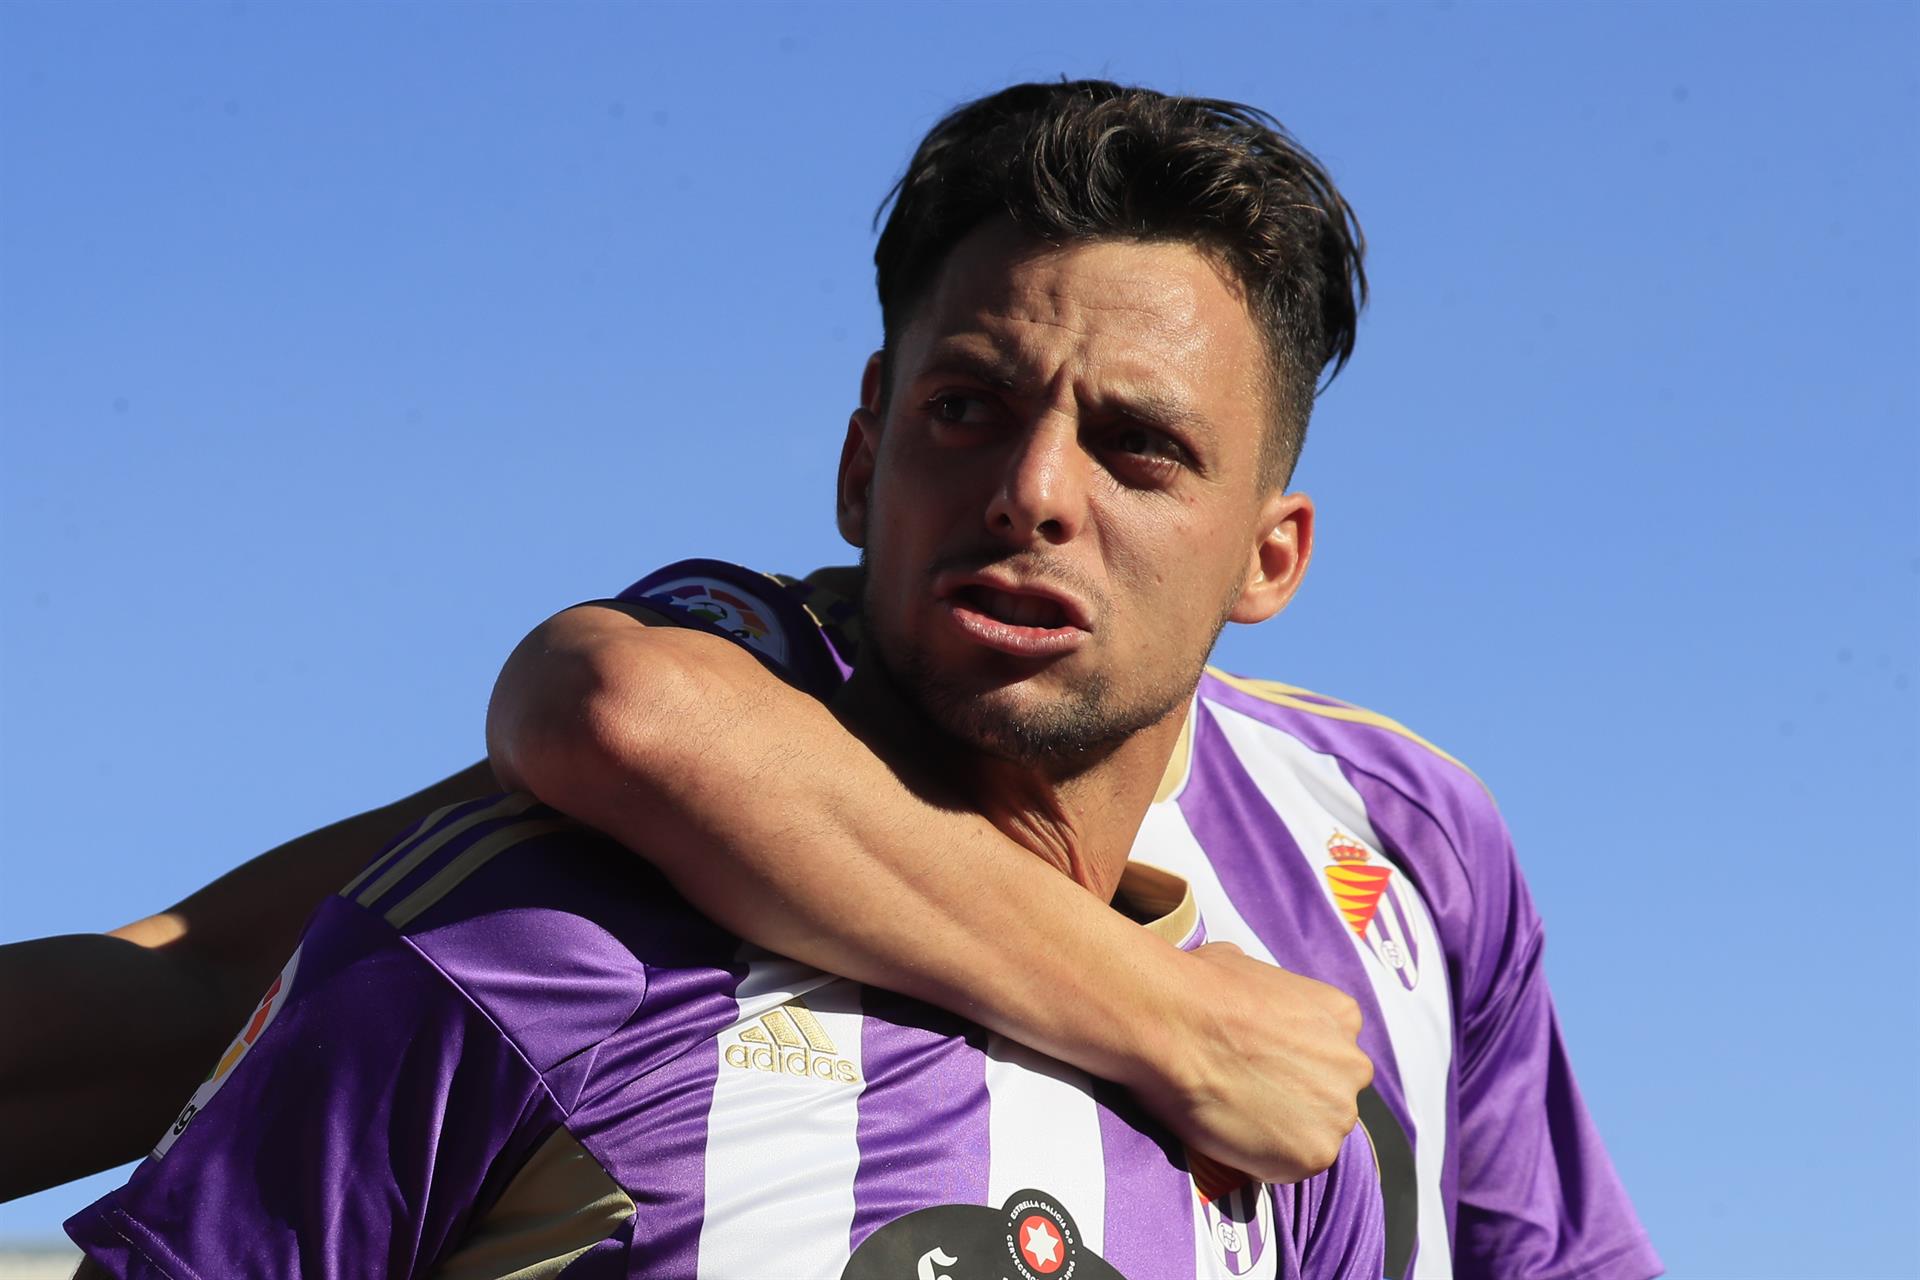 El delantero del Valladolid Óscar Plano, celebra su gol contra el Getafe, durante el partido de la jornada 7 de LaLiga Santander en el Coliseum Alfonso Pérez de Getafe.- EFE/Fernando Alvarado
